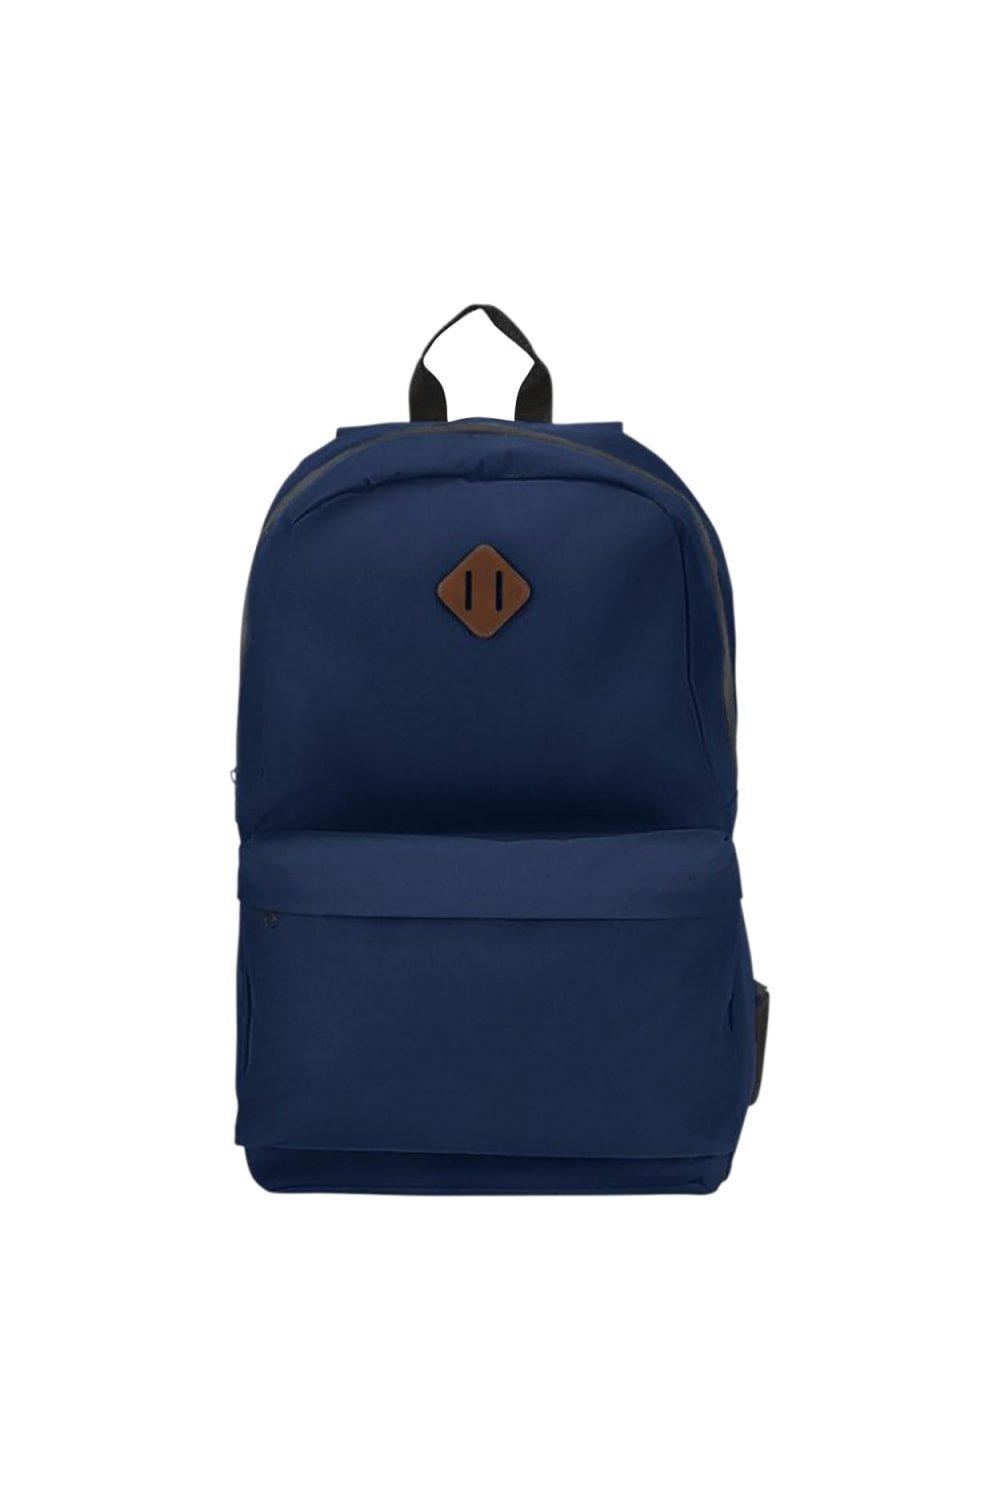 Рюкзак для ноутбука Stratta Bullet, темно-синий цена и фото